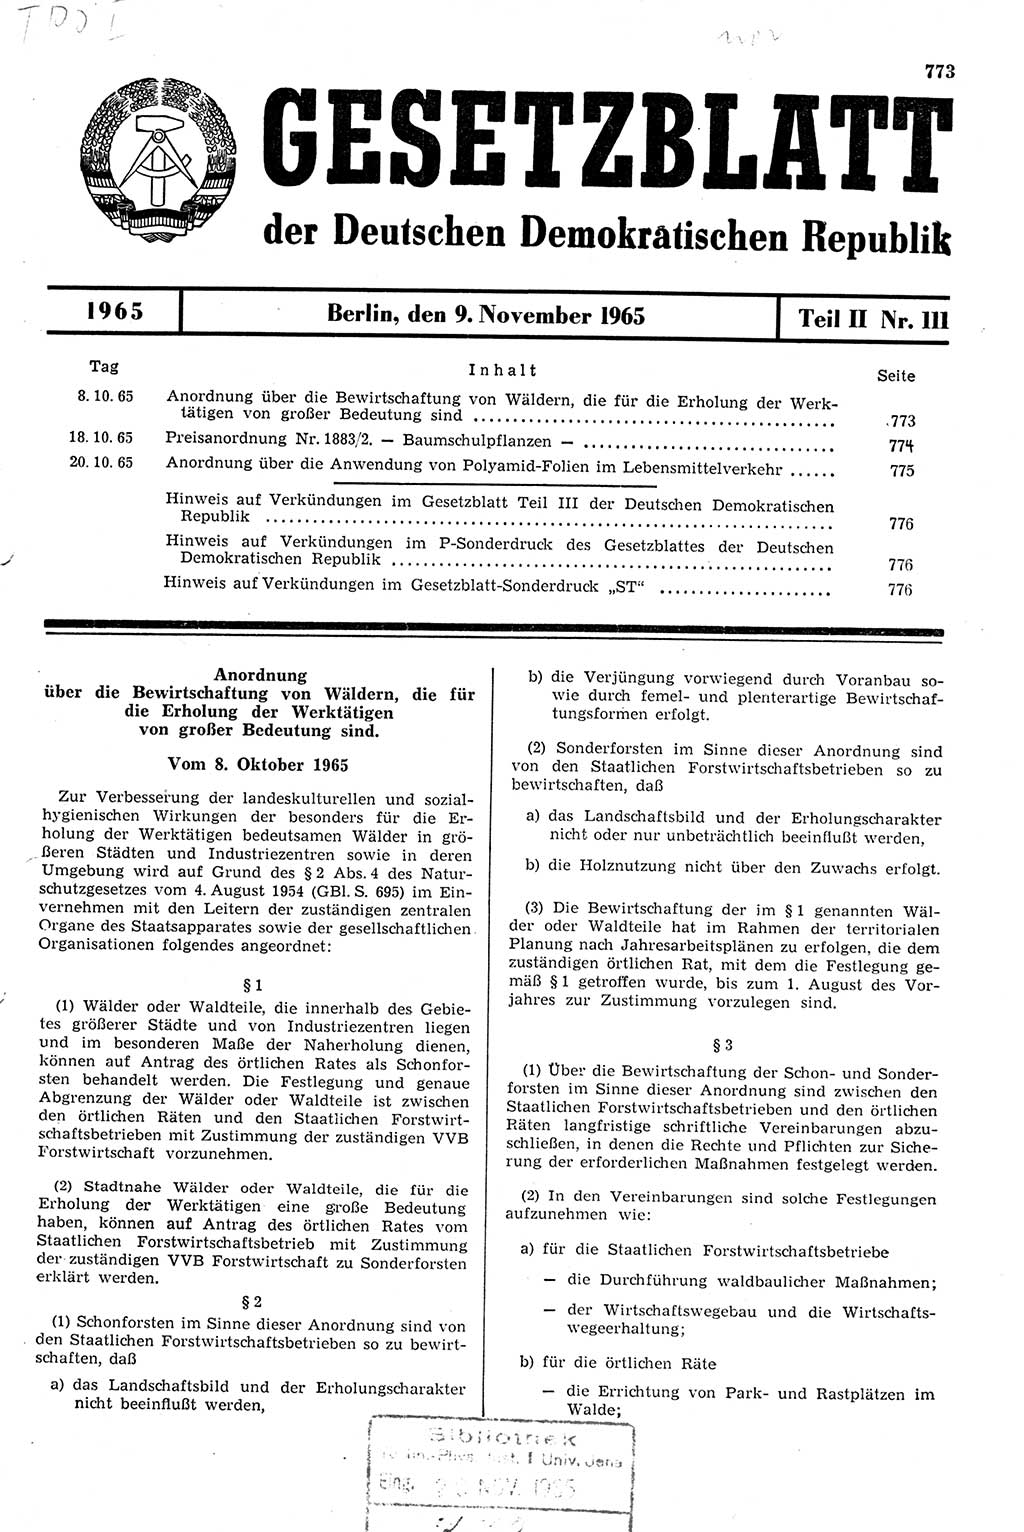 Gesetzblatt (GBl.) der Deutschen Demokratischen Republik (DDR) Teil ⅠⅠ 1965, Seite 773 (GBl. DDR ⅠⅠ 1965, S. 773)